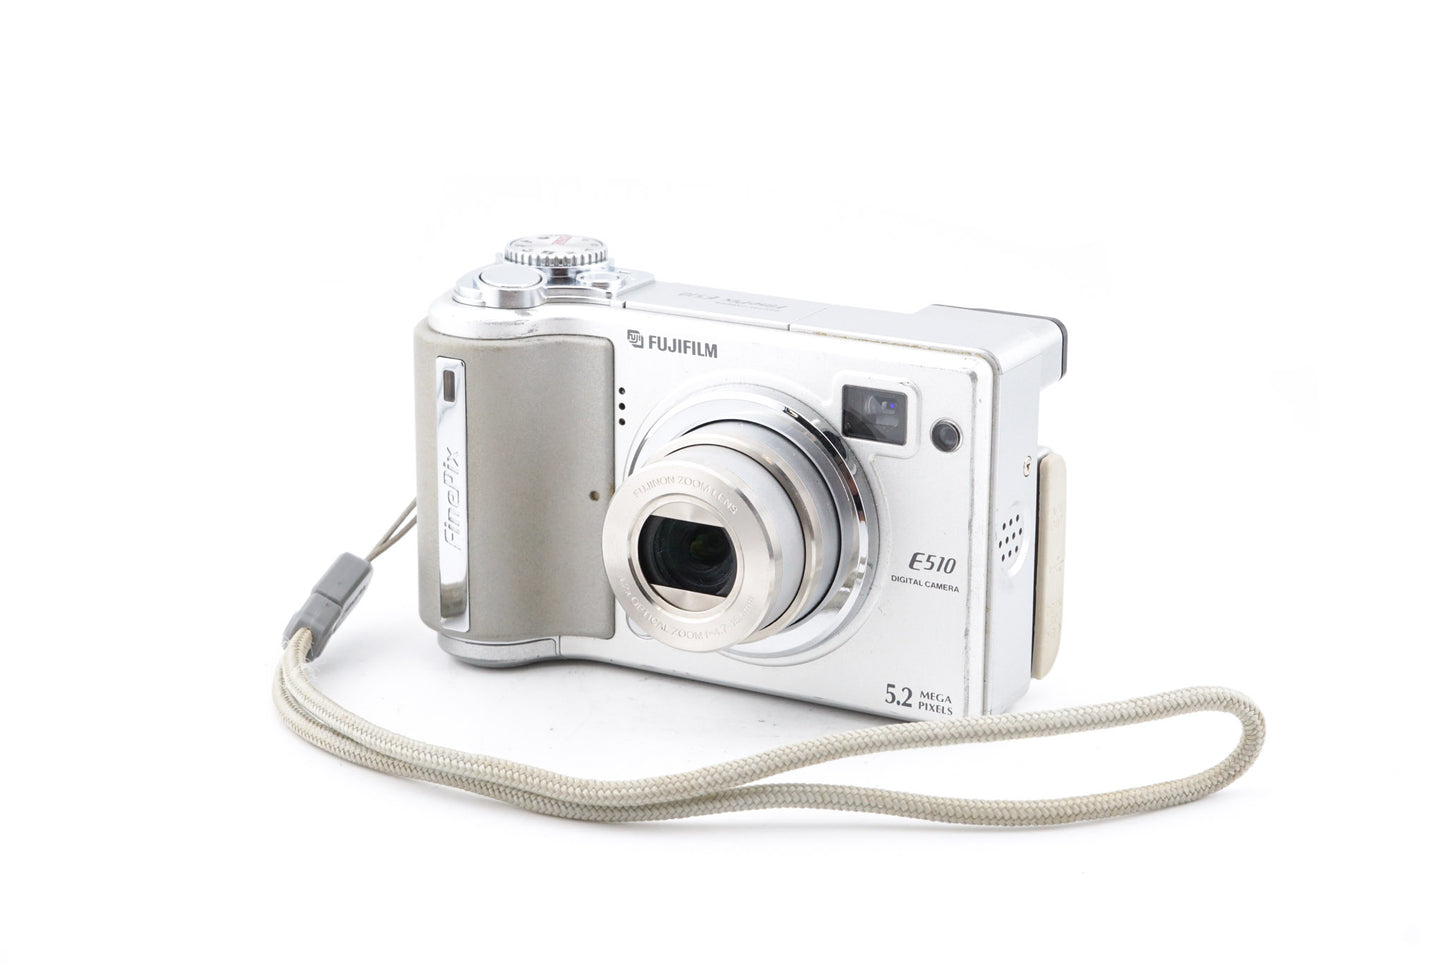 Fujifilm Finepix E510 - Camera